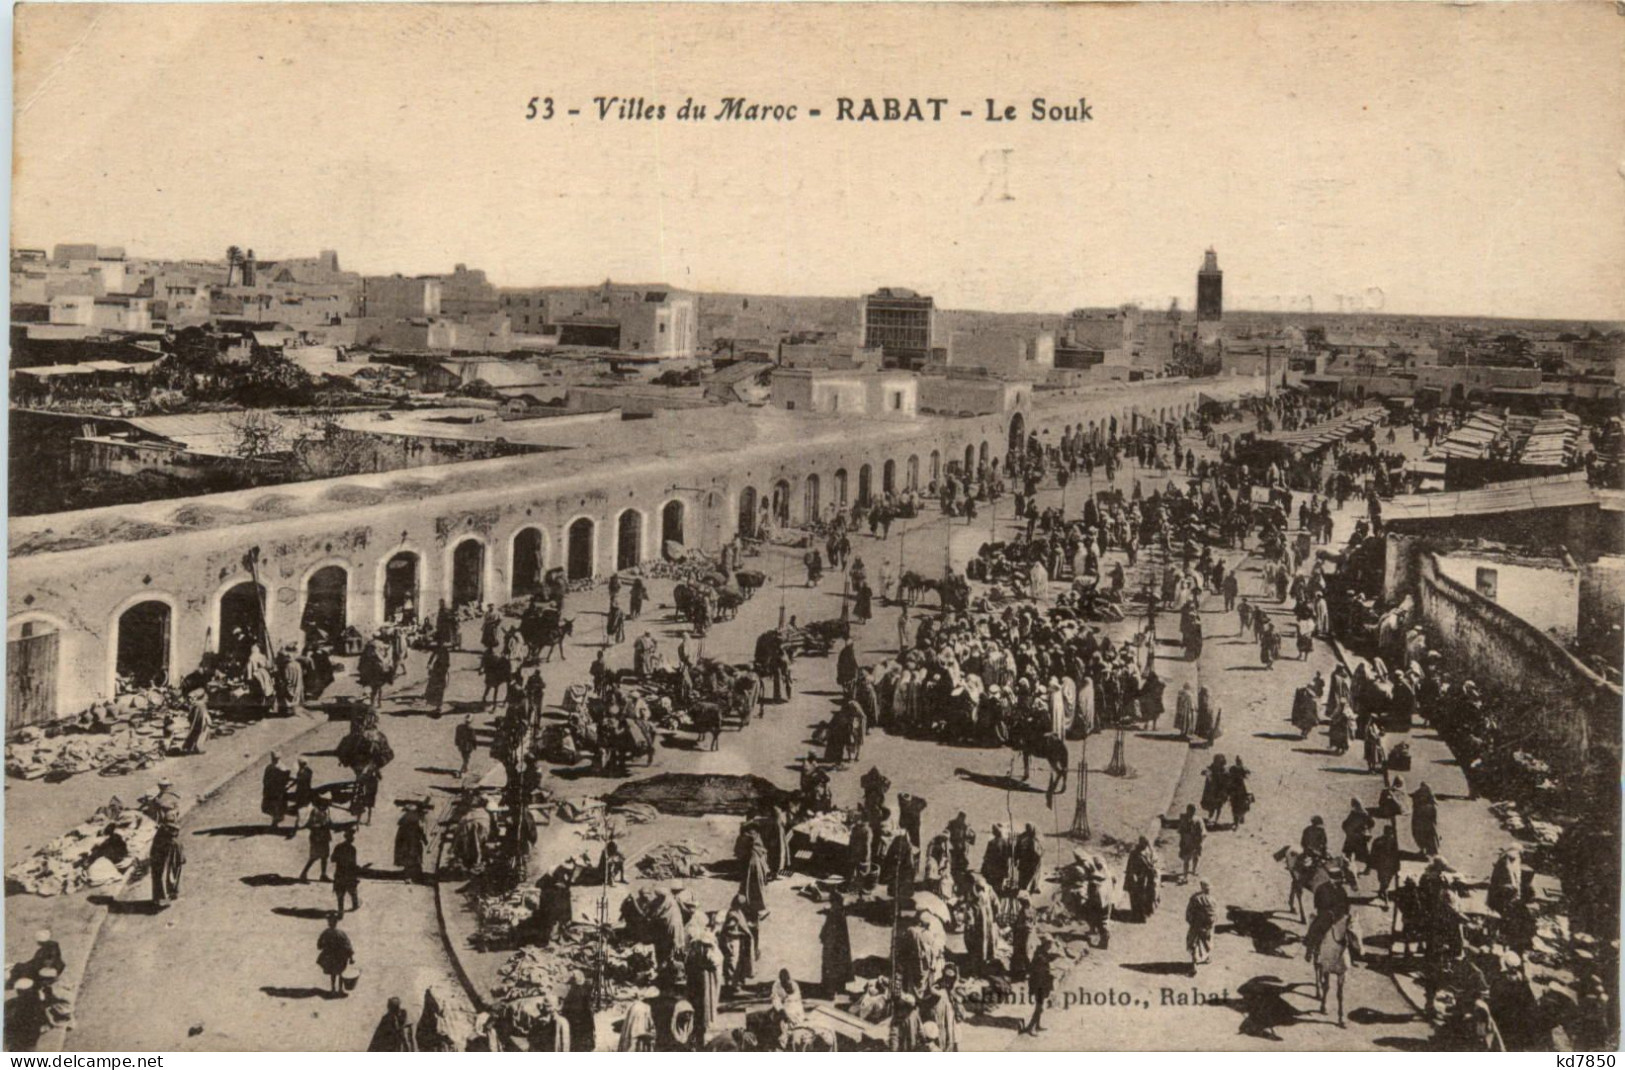 Rabat - Rabat